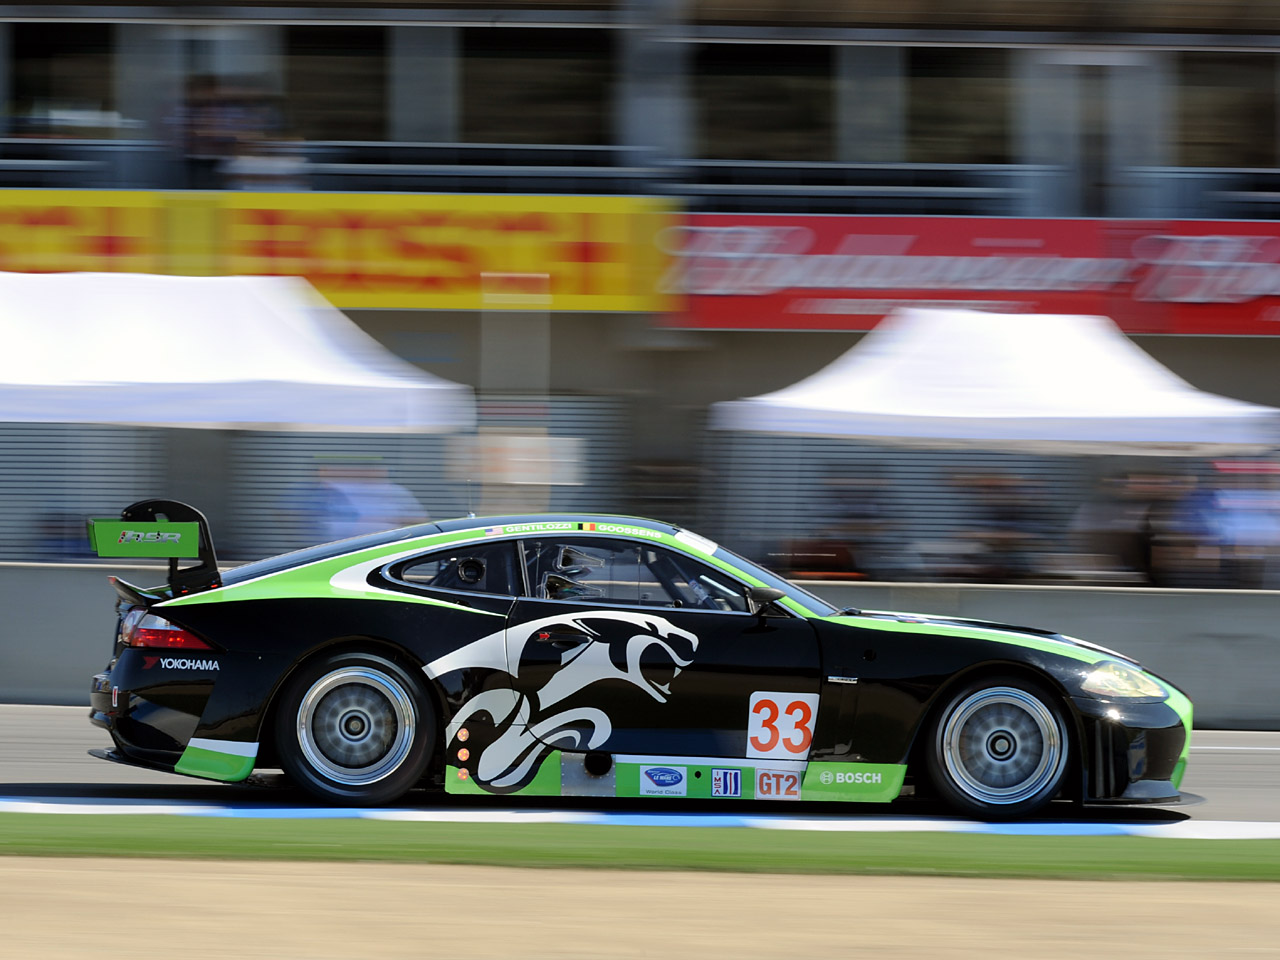 2009 Jaguar XKR GT2